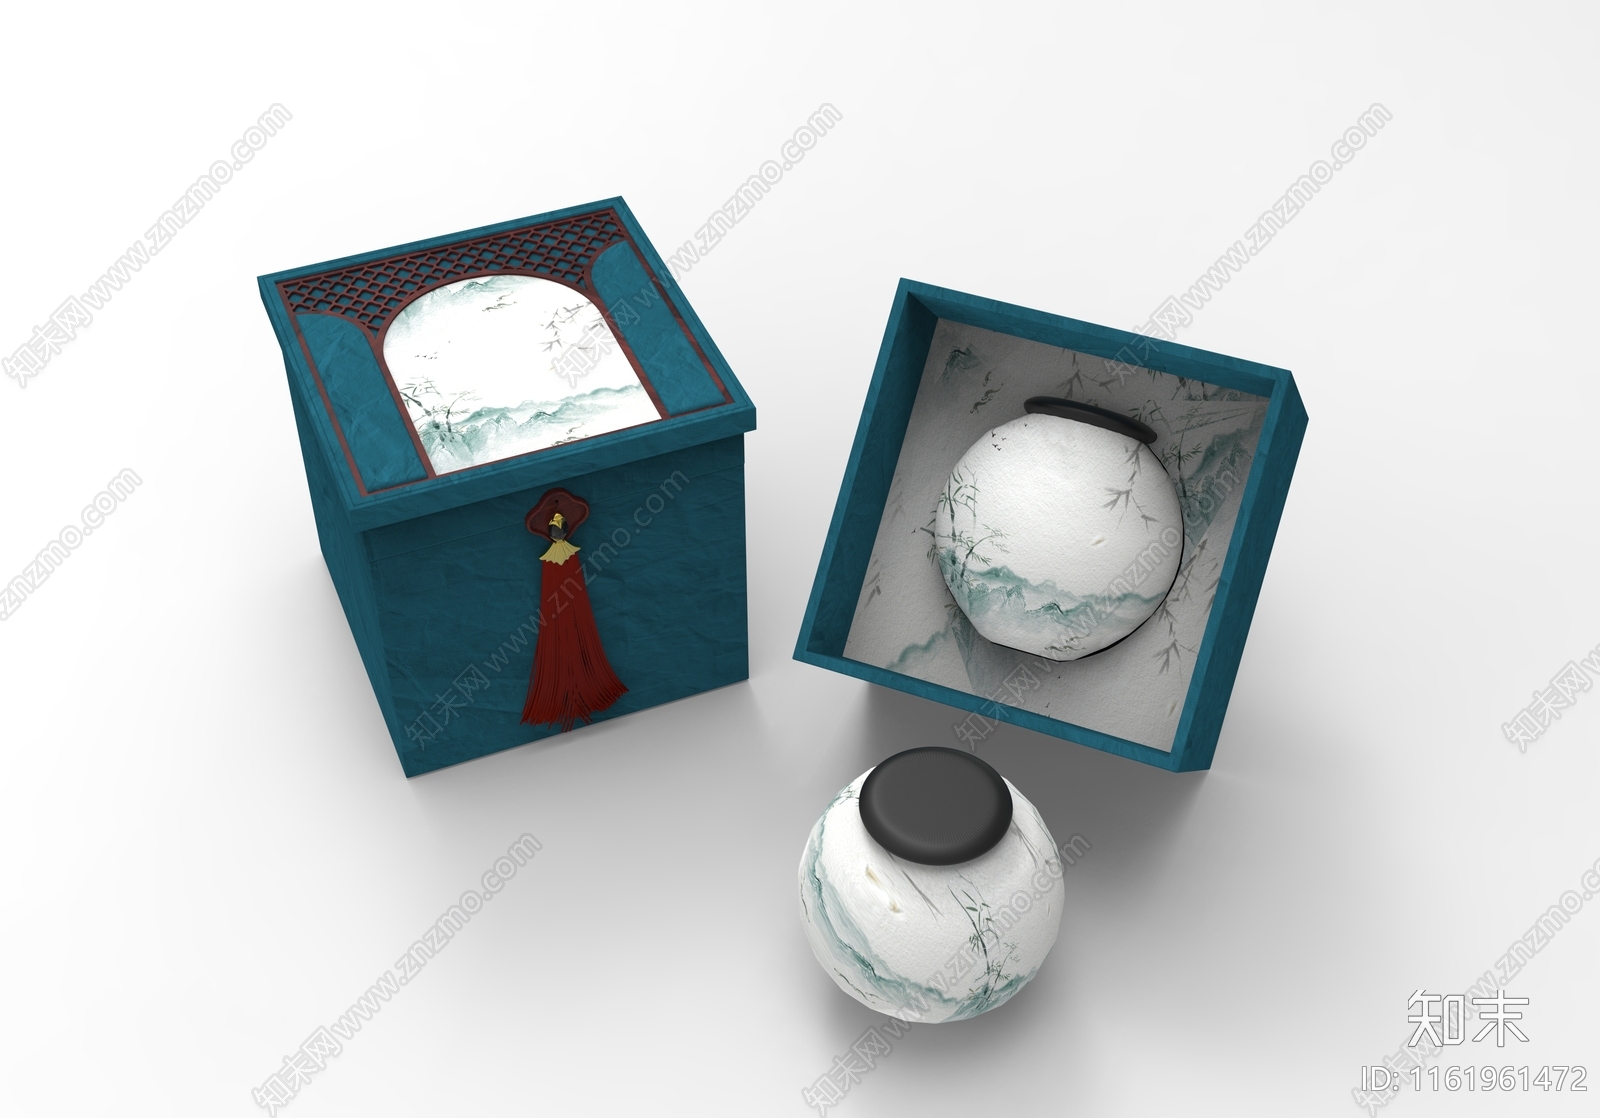 中式茶叶罐子包装盒3D模型下载【ID:1161961472】